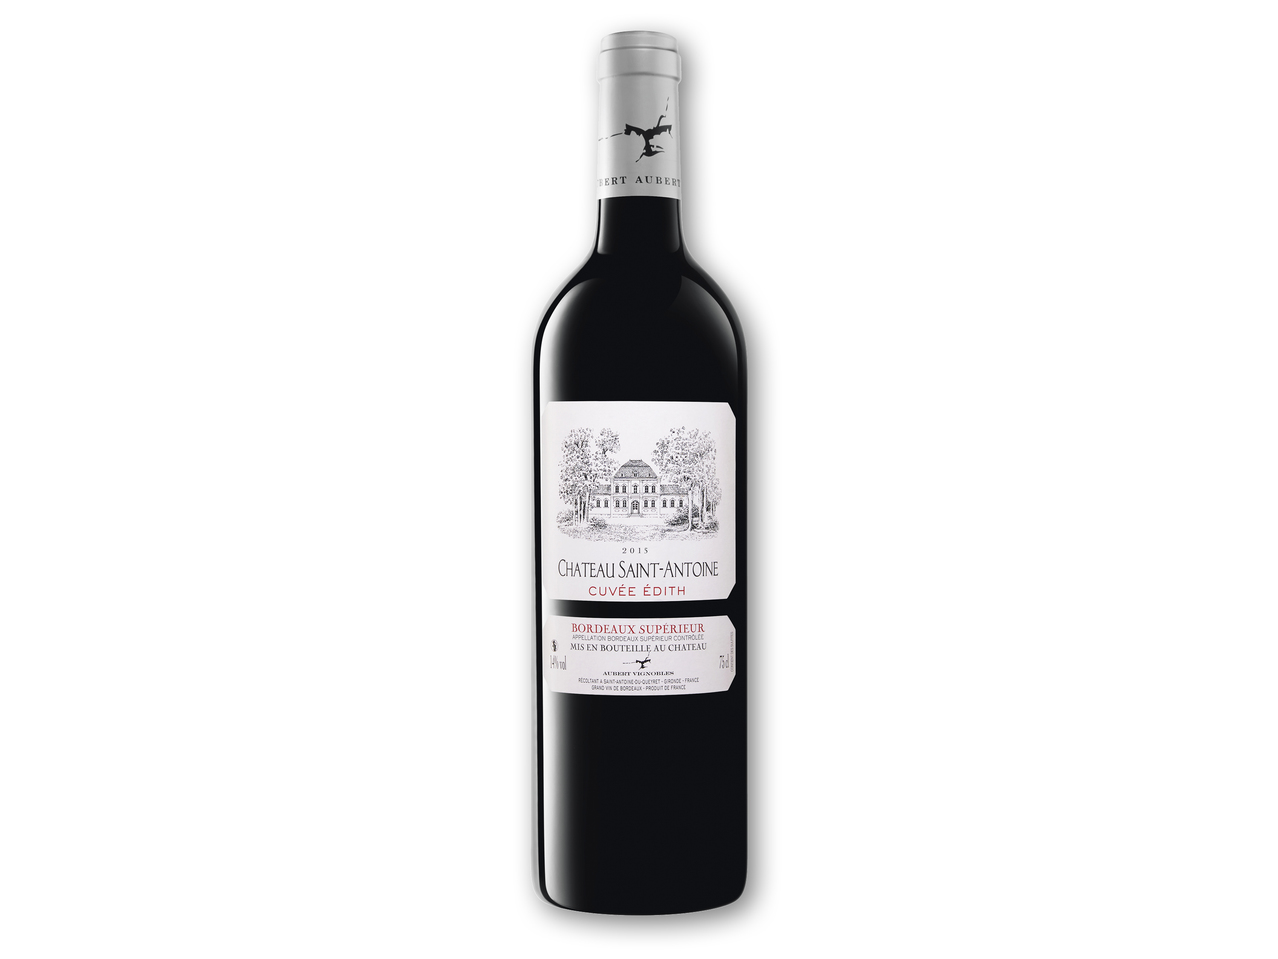 CHATEAU SAINT-ANTOINE Bordeaux Supérieur AOP1